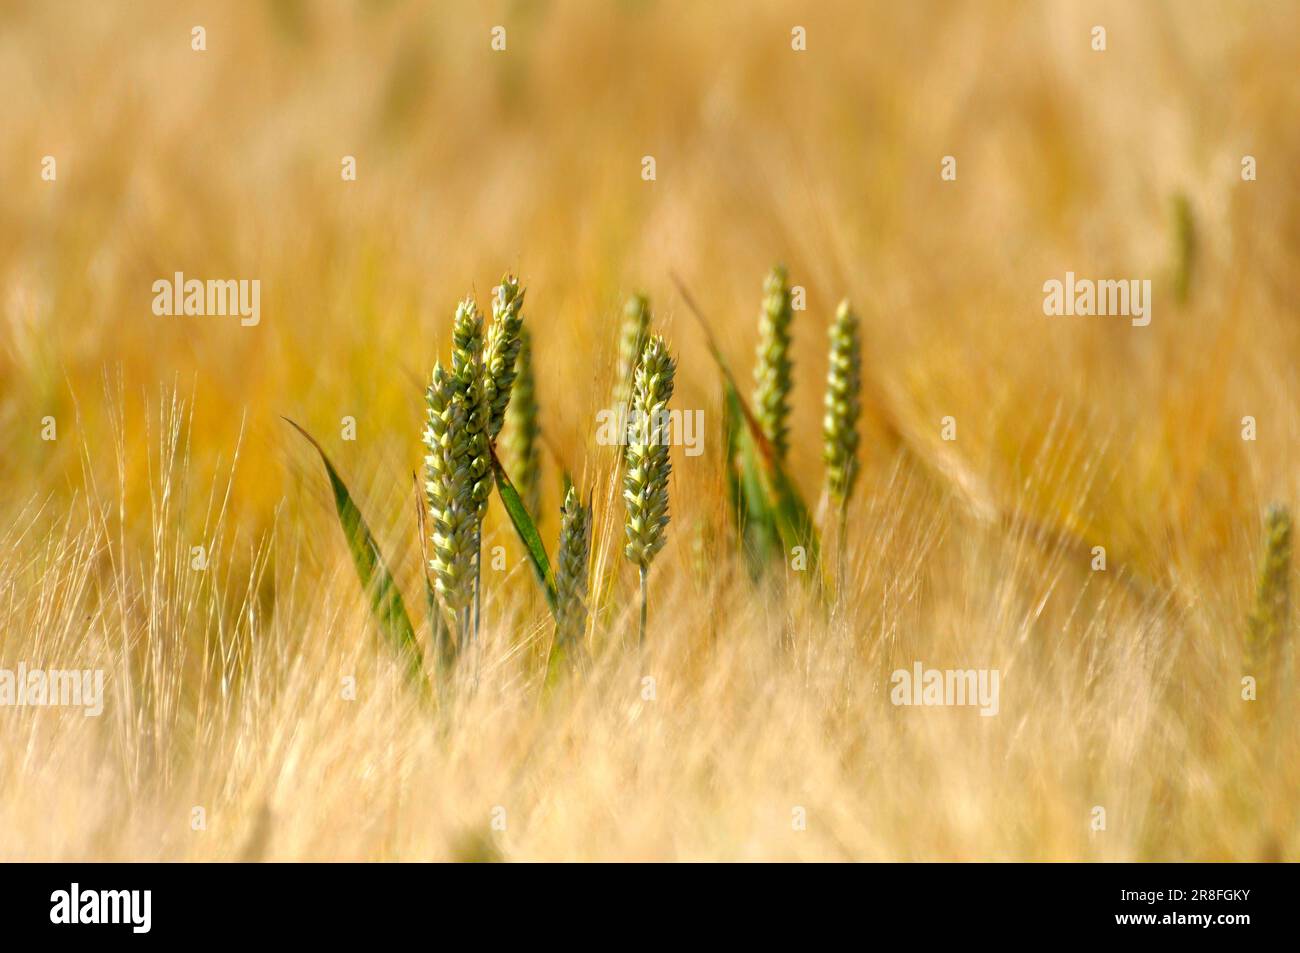 Wheat ears, rye (Secale cereale) field, rye Stock Photo